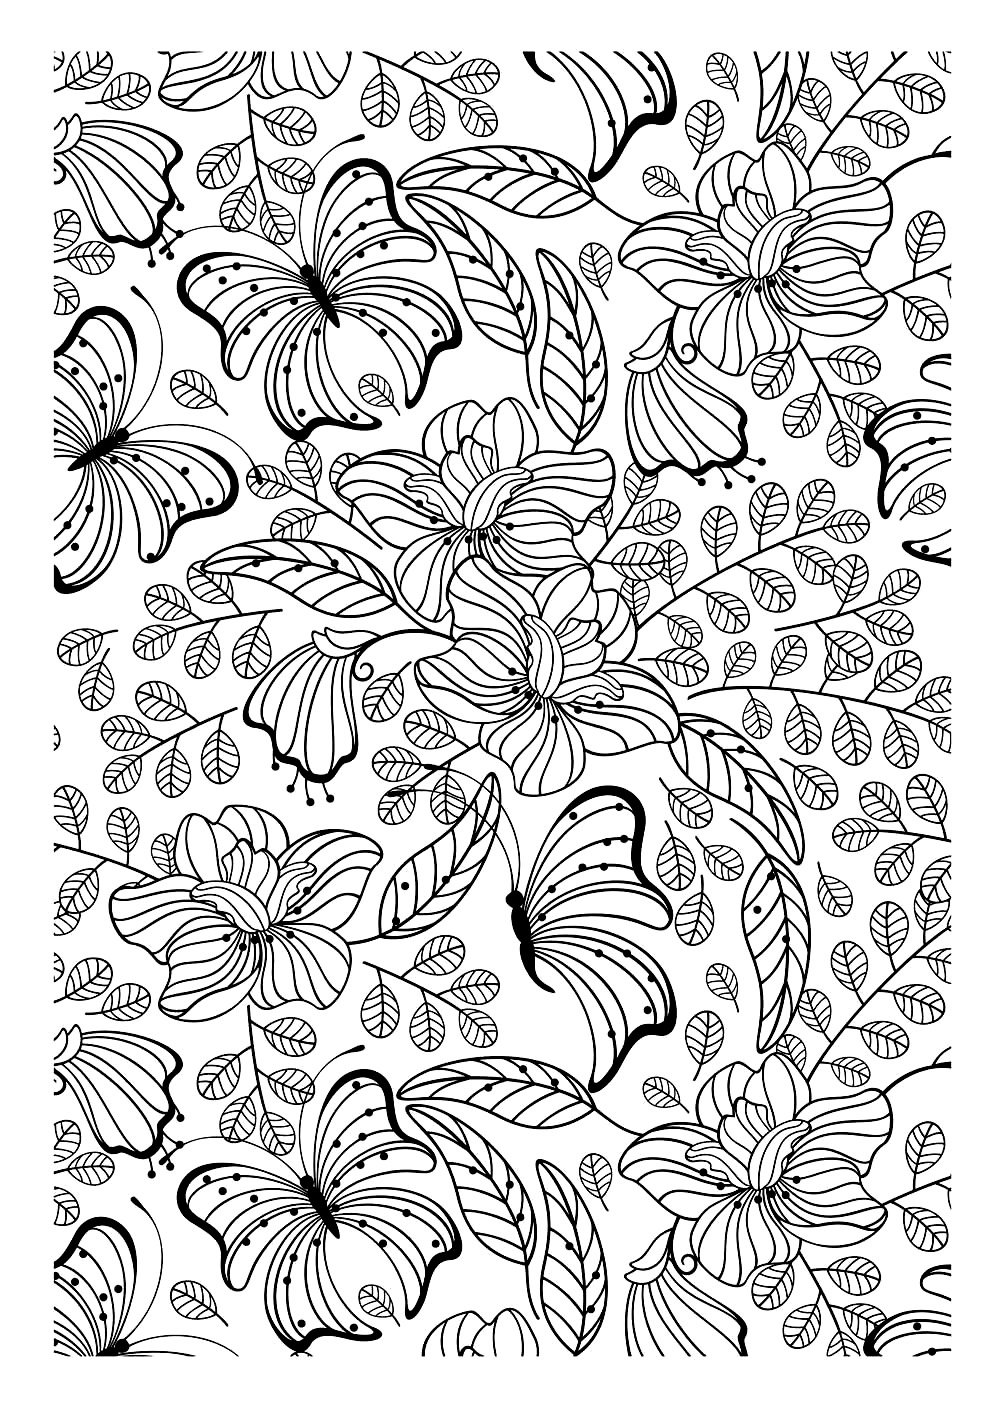 Un'altra immagine da stampare e da colorare piena di belle foglie, fiori e farfalle, che è sicuramente un'interessante pagina da colorare per adulti da ottenere